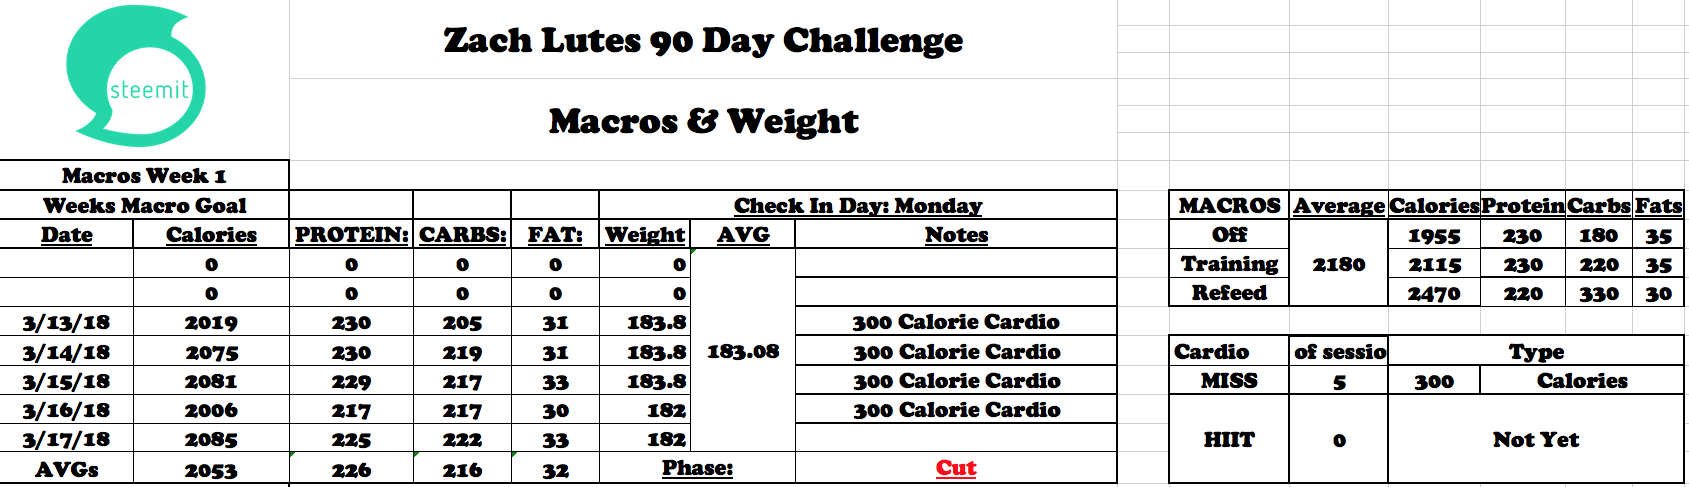 90 Day Summer Shredding Challenge Week 1 Update Steemit